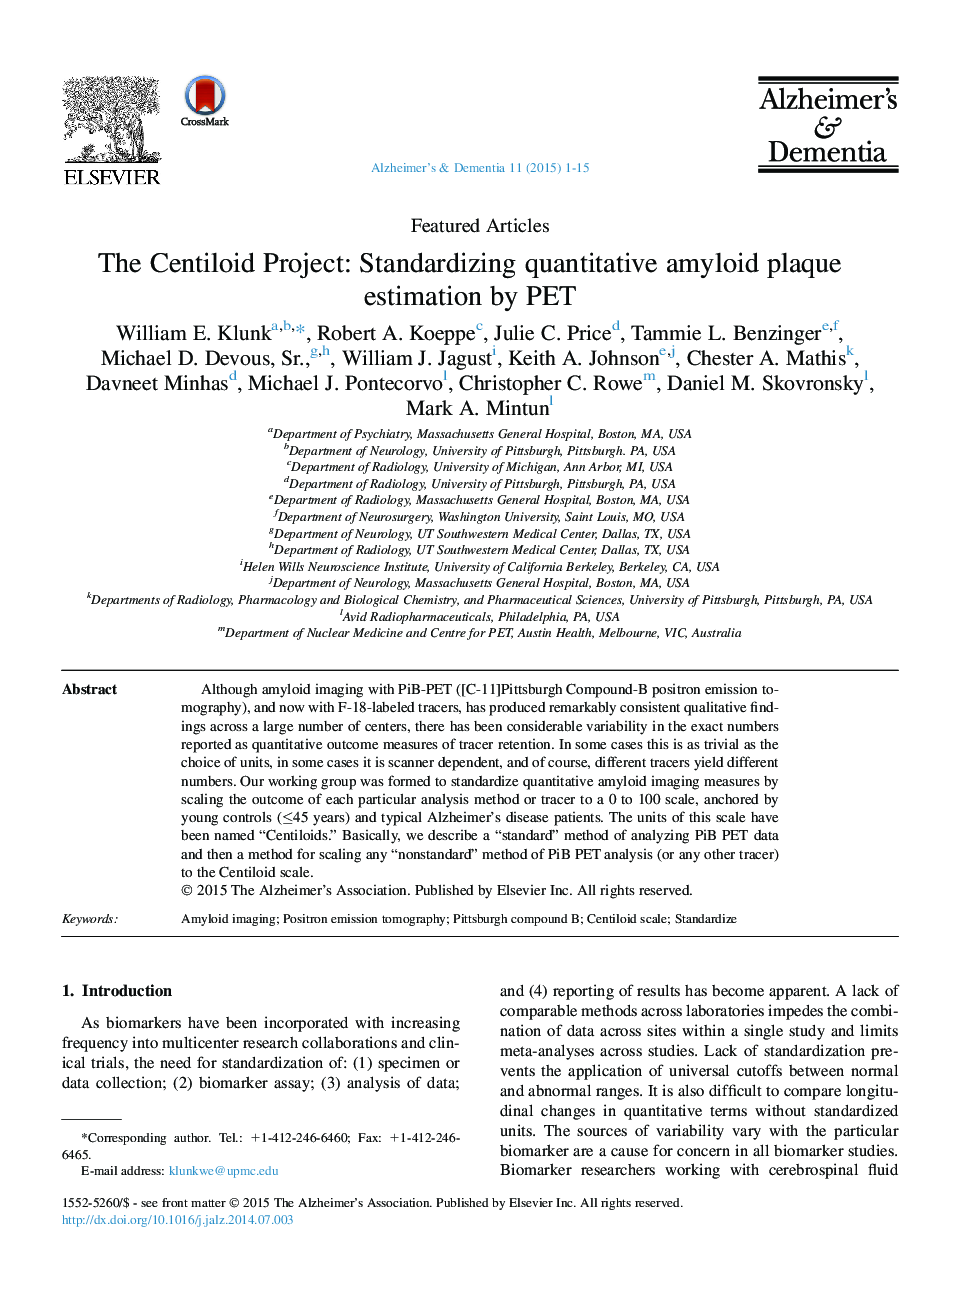 Featured ArticleThe Centiloid Project: Standardizing quantitative amyloid plaque estimation by PET